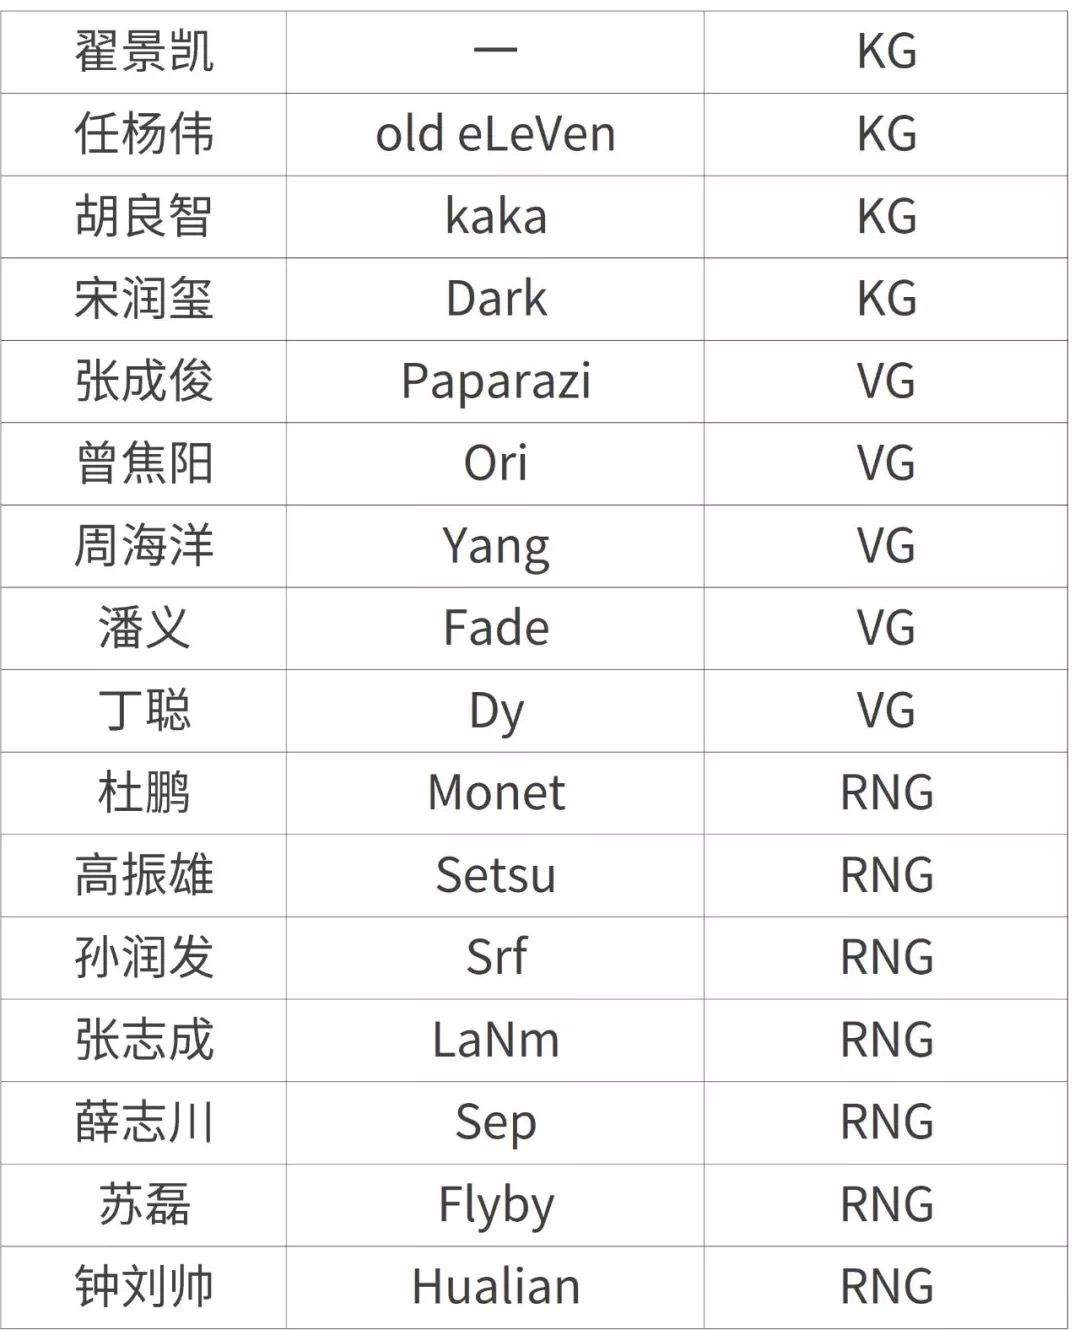 上海电竞协会公布首批运动员注册名单 多支著名战队在列